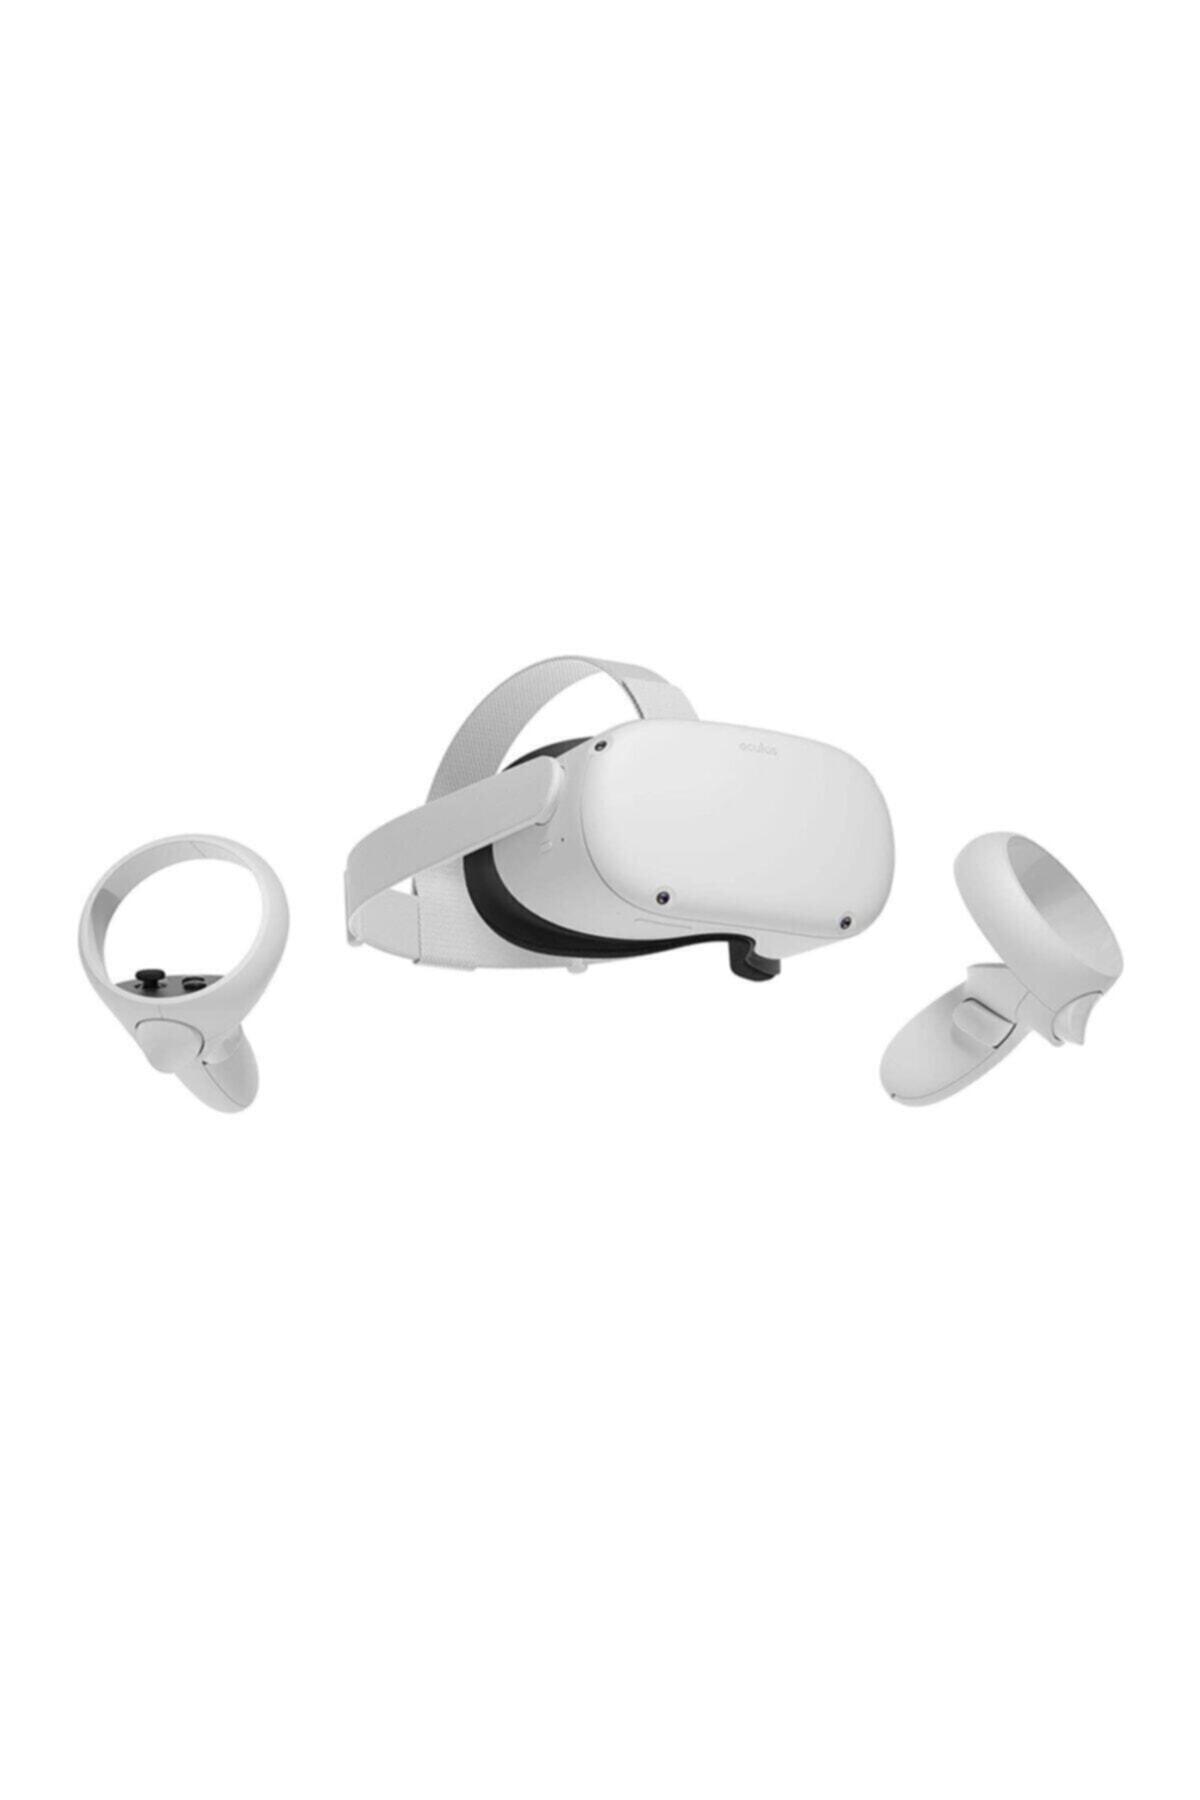 Oculus Quest 2 256 GB All In One Kablosuz VR Sanal Gerçeklik Gözlüğü